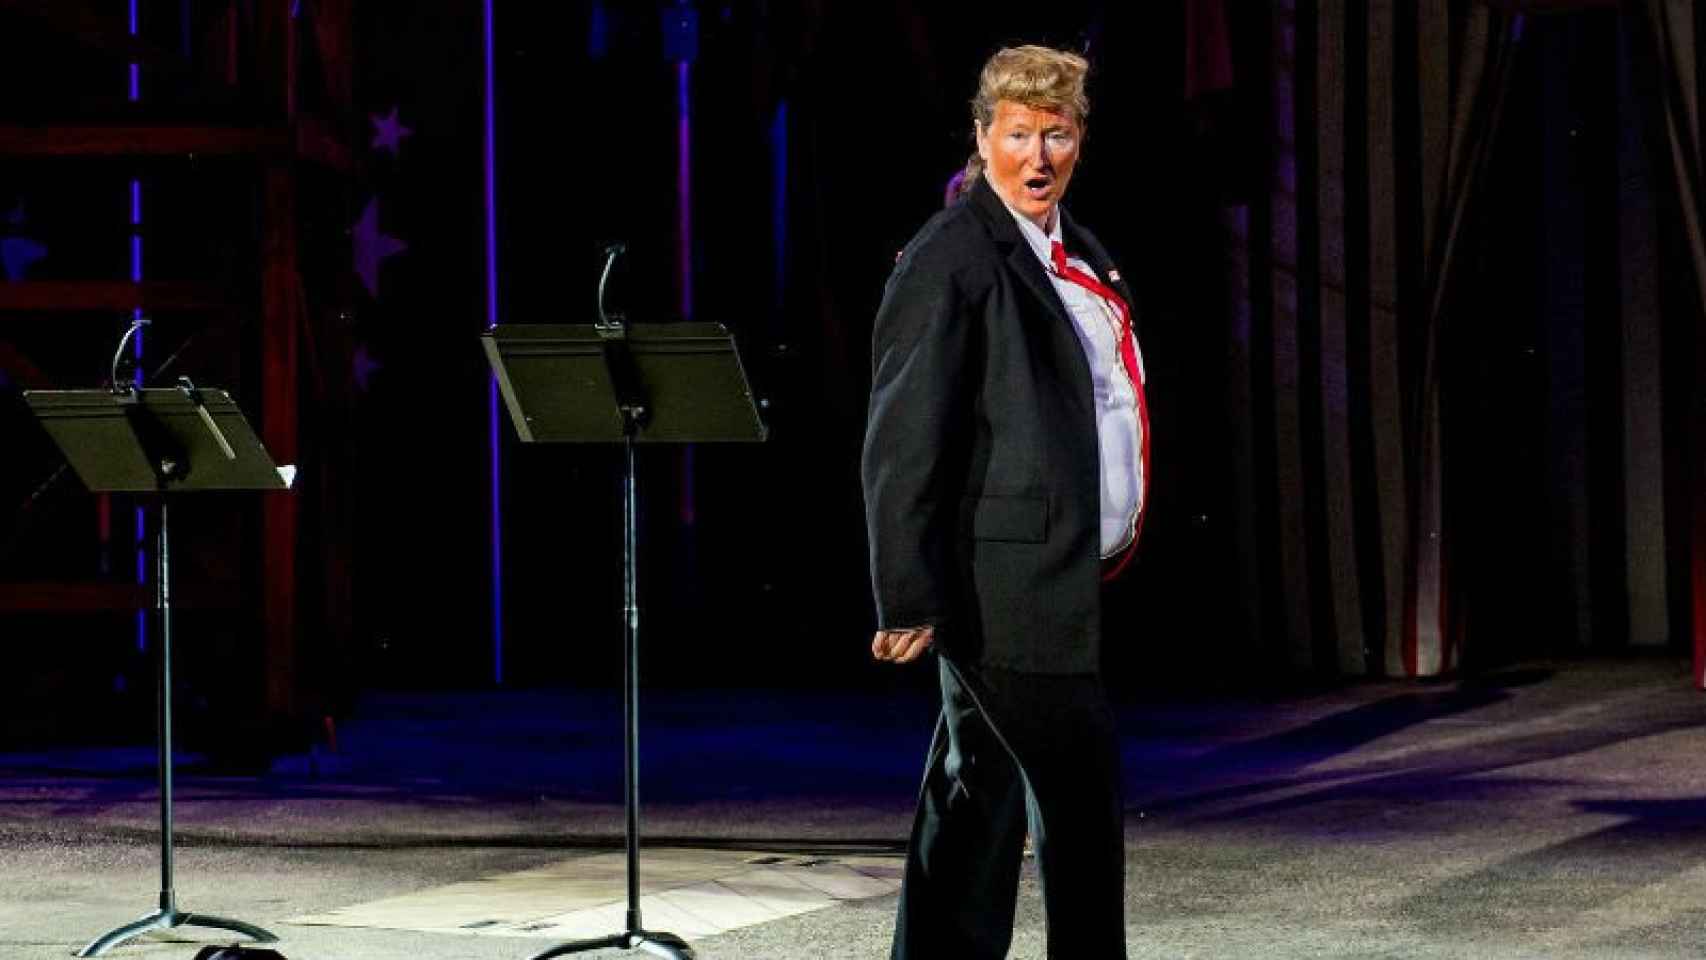 La actriz Meryl Streep interpretando a Donald Trump durante un 'show' benéfico en el Public Theatre de Nueva York.